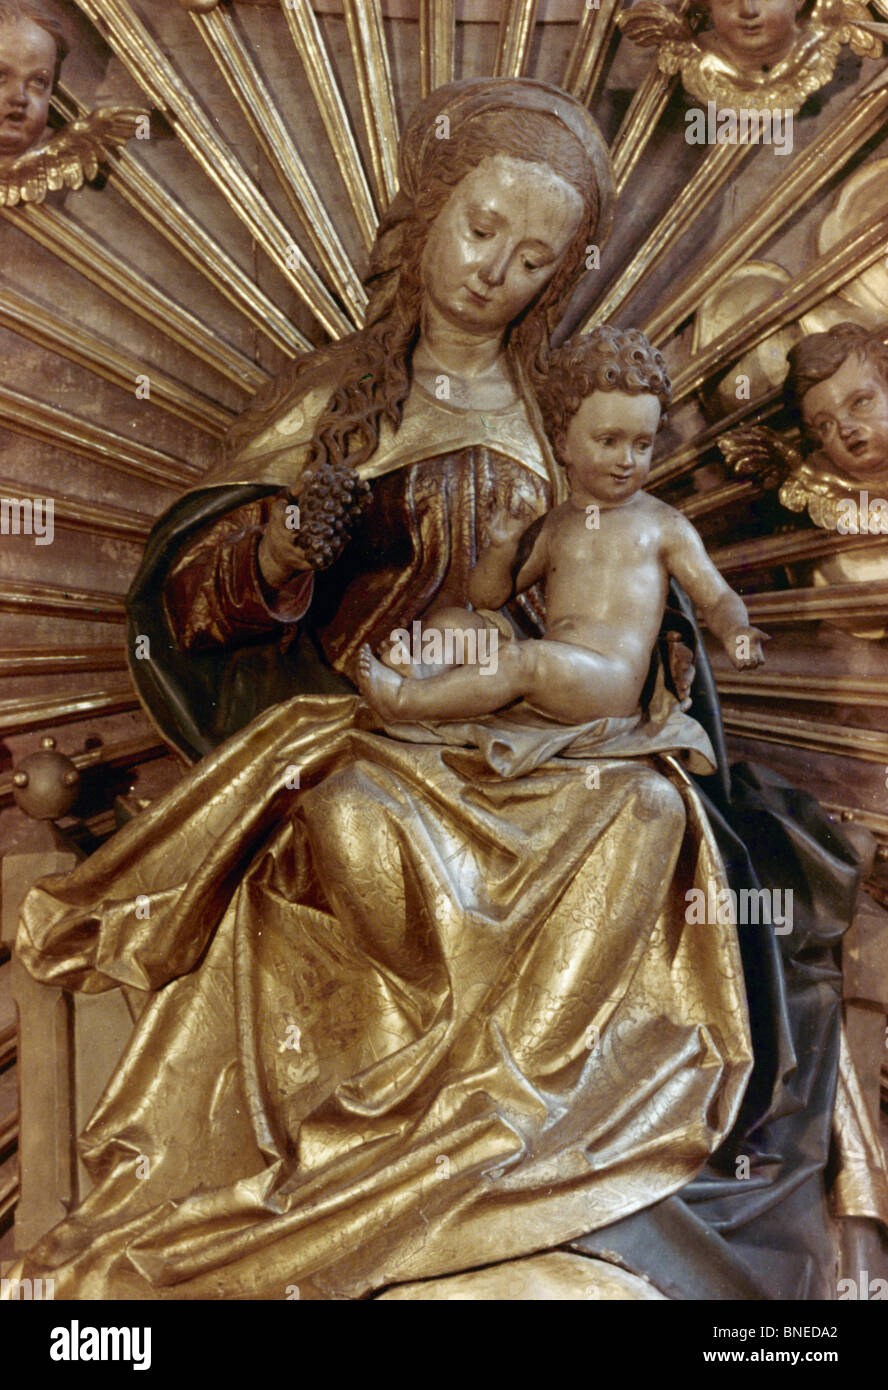 Österreich, Salzburg, Franziskaner Kirche, Madonna und Kind von Michael Pacher, Holz, 1495, ca. 1435-1498 Stockfoto